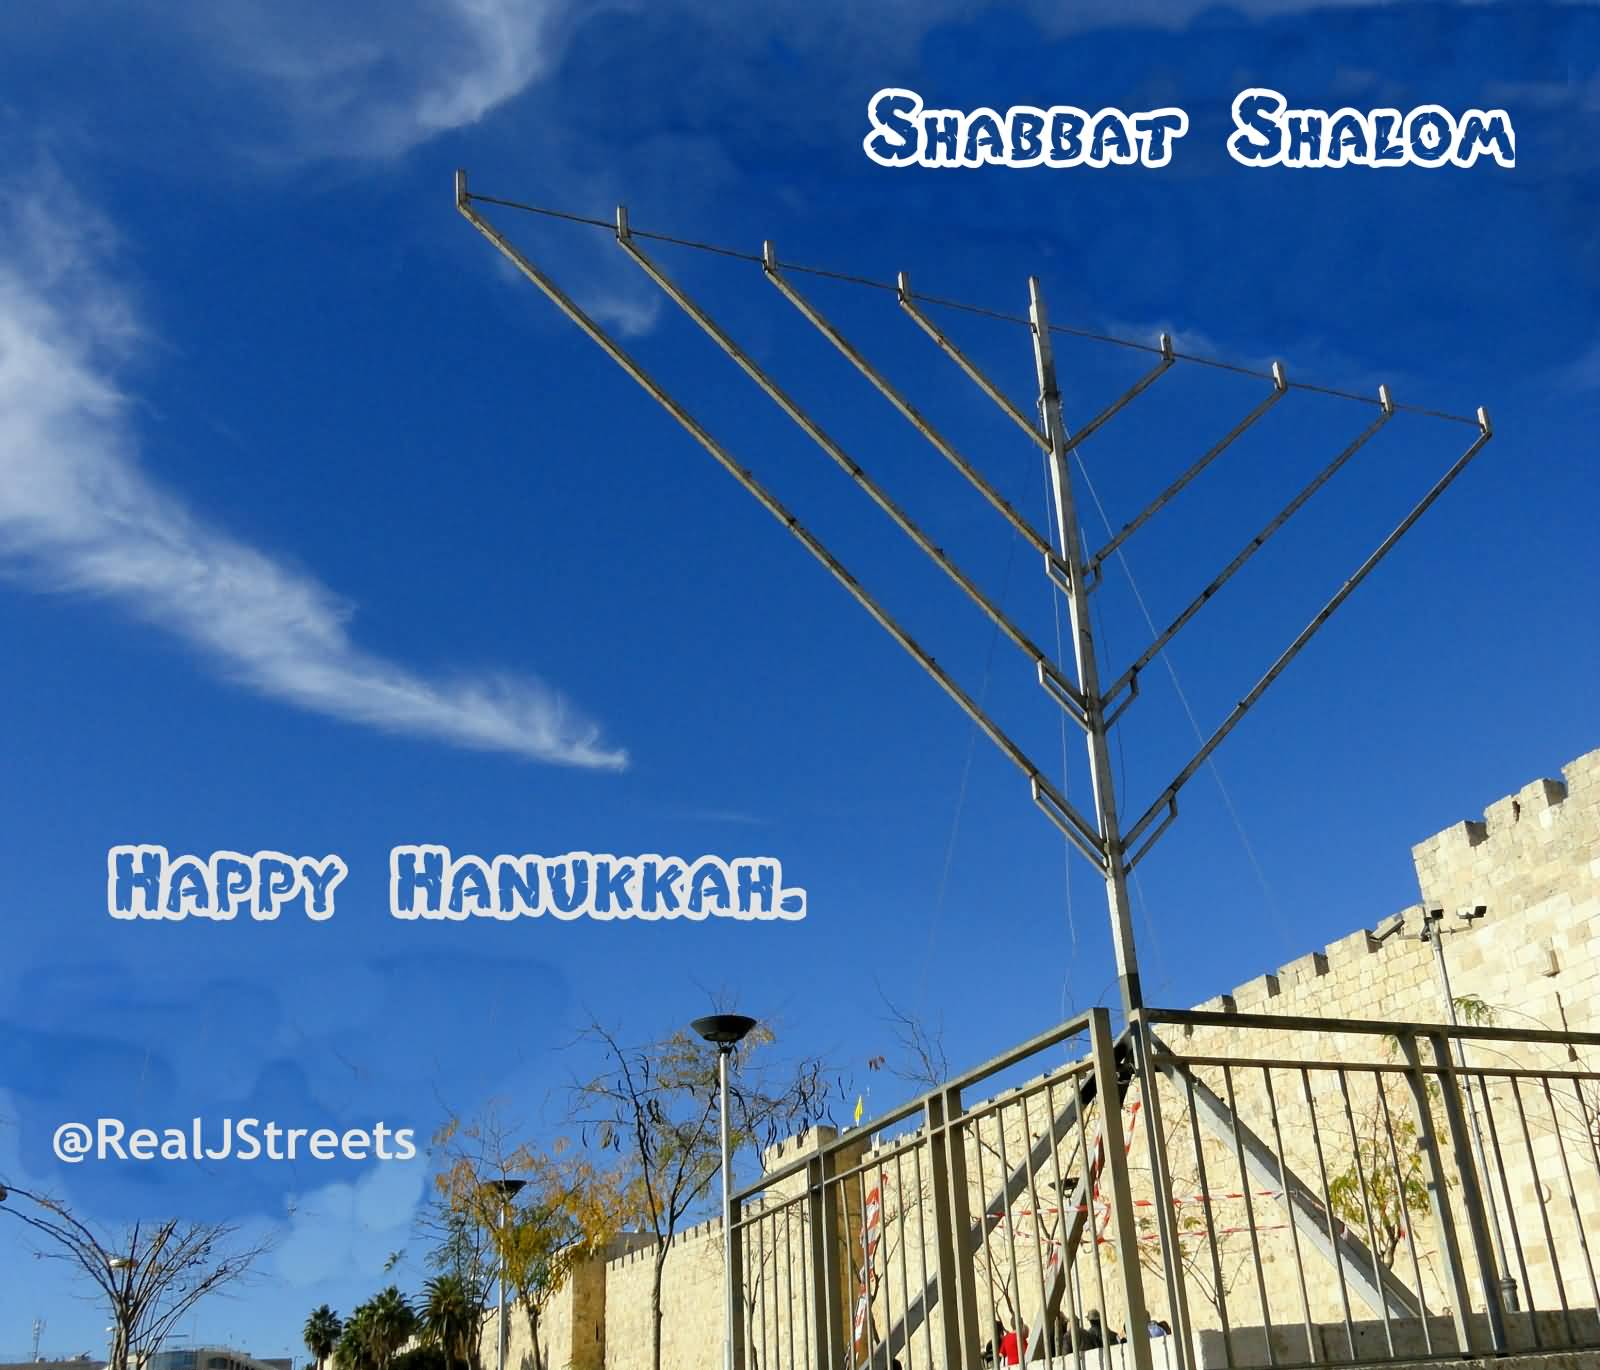 Shabbat Shalom And Happy Hanukkah